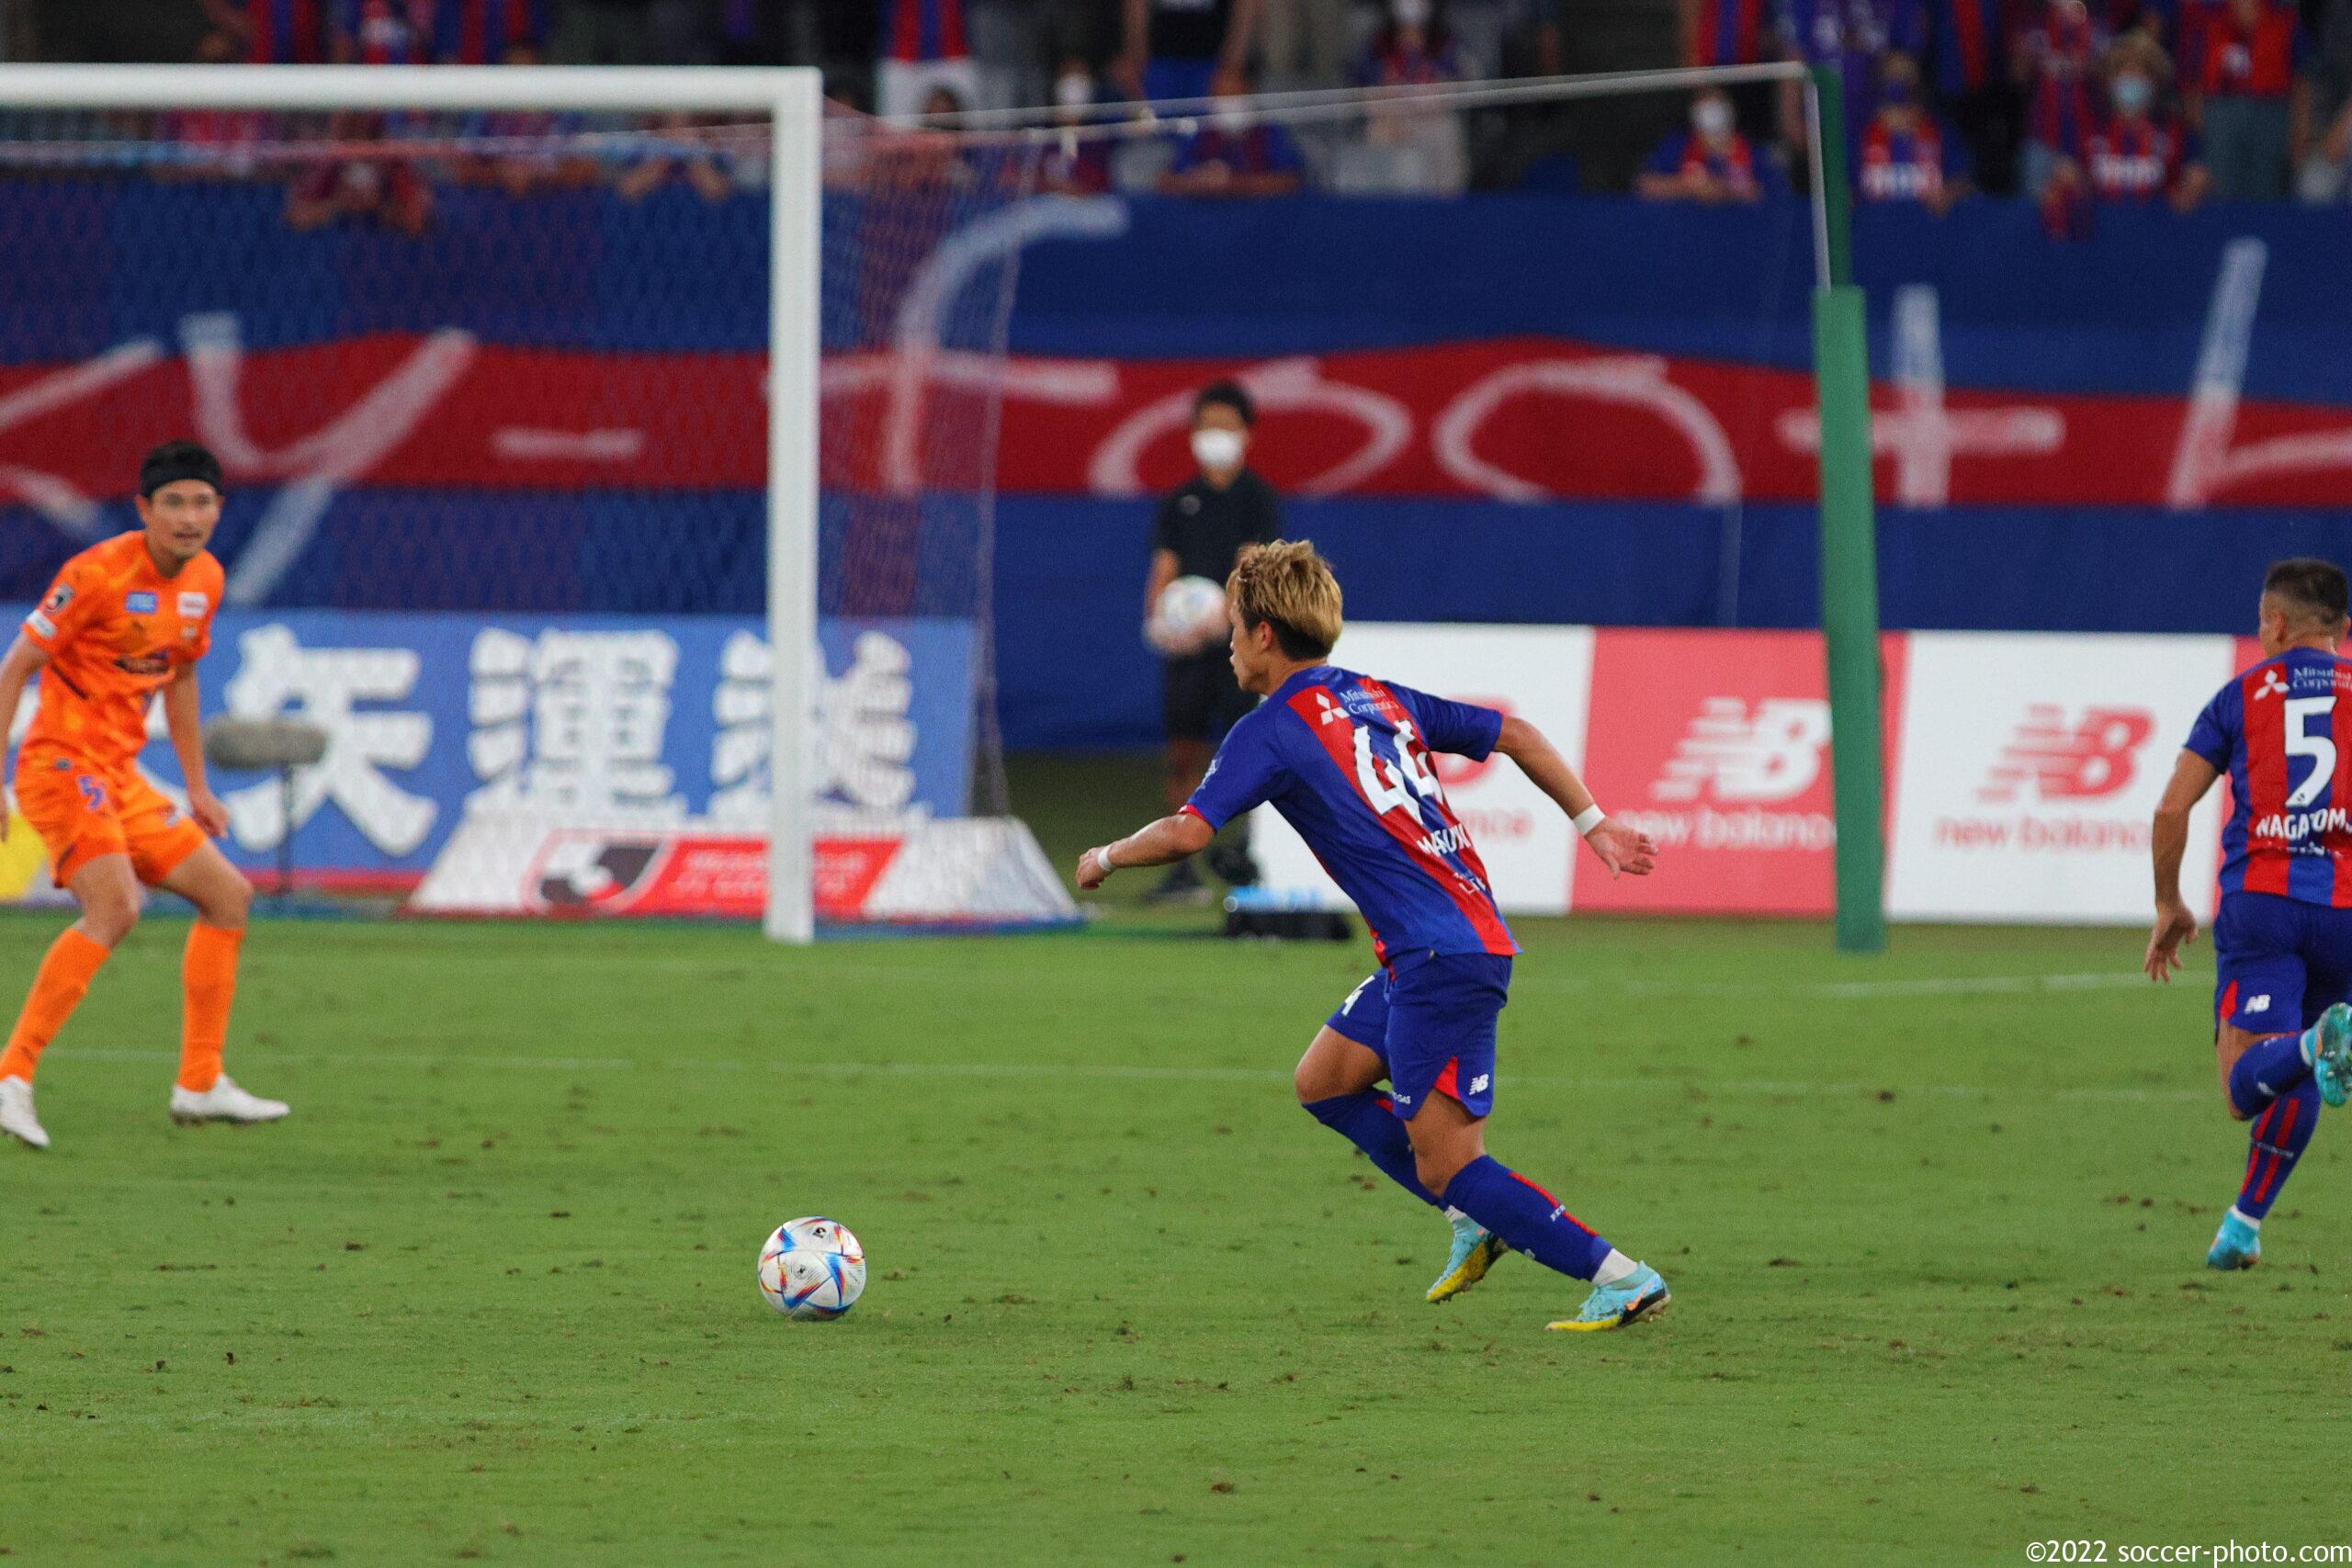 攻めあがるFC東京 松木玖生選手 2022.08.07 FC東京vs清水エスパルス (写真 soccer-photo.com)